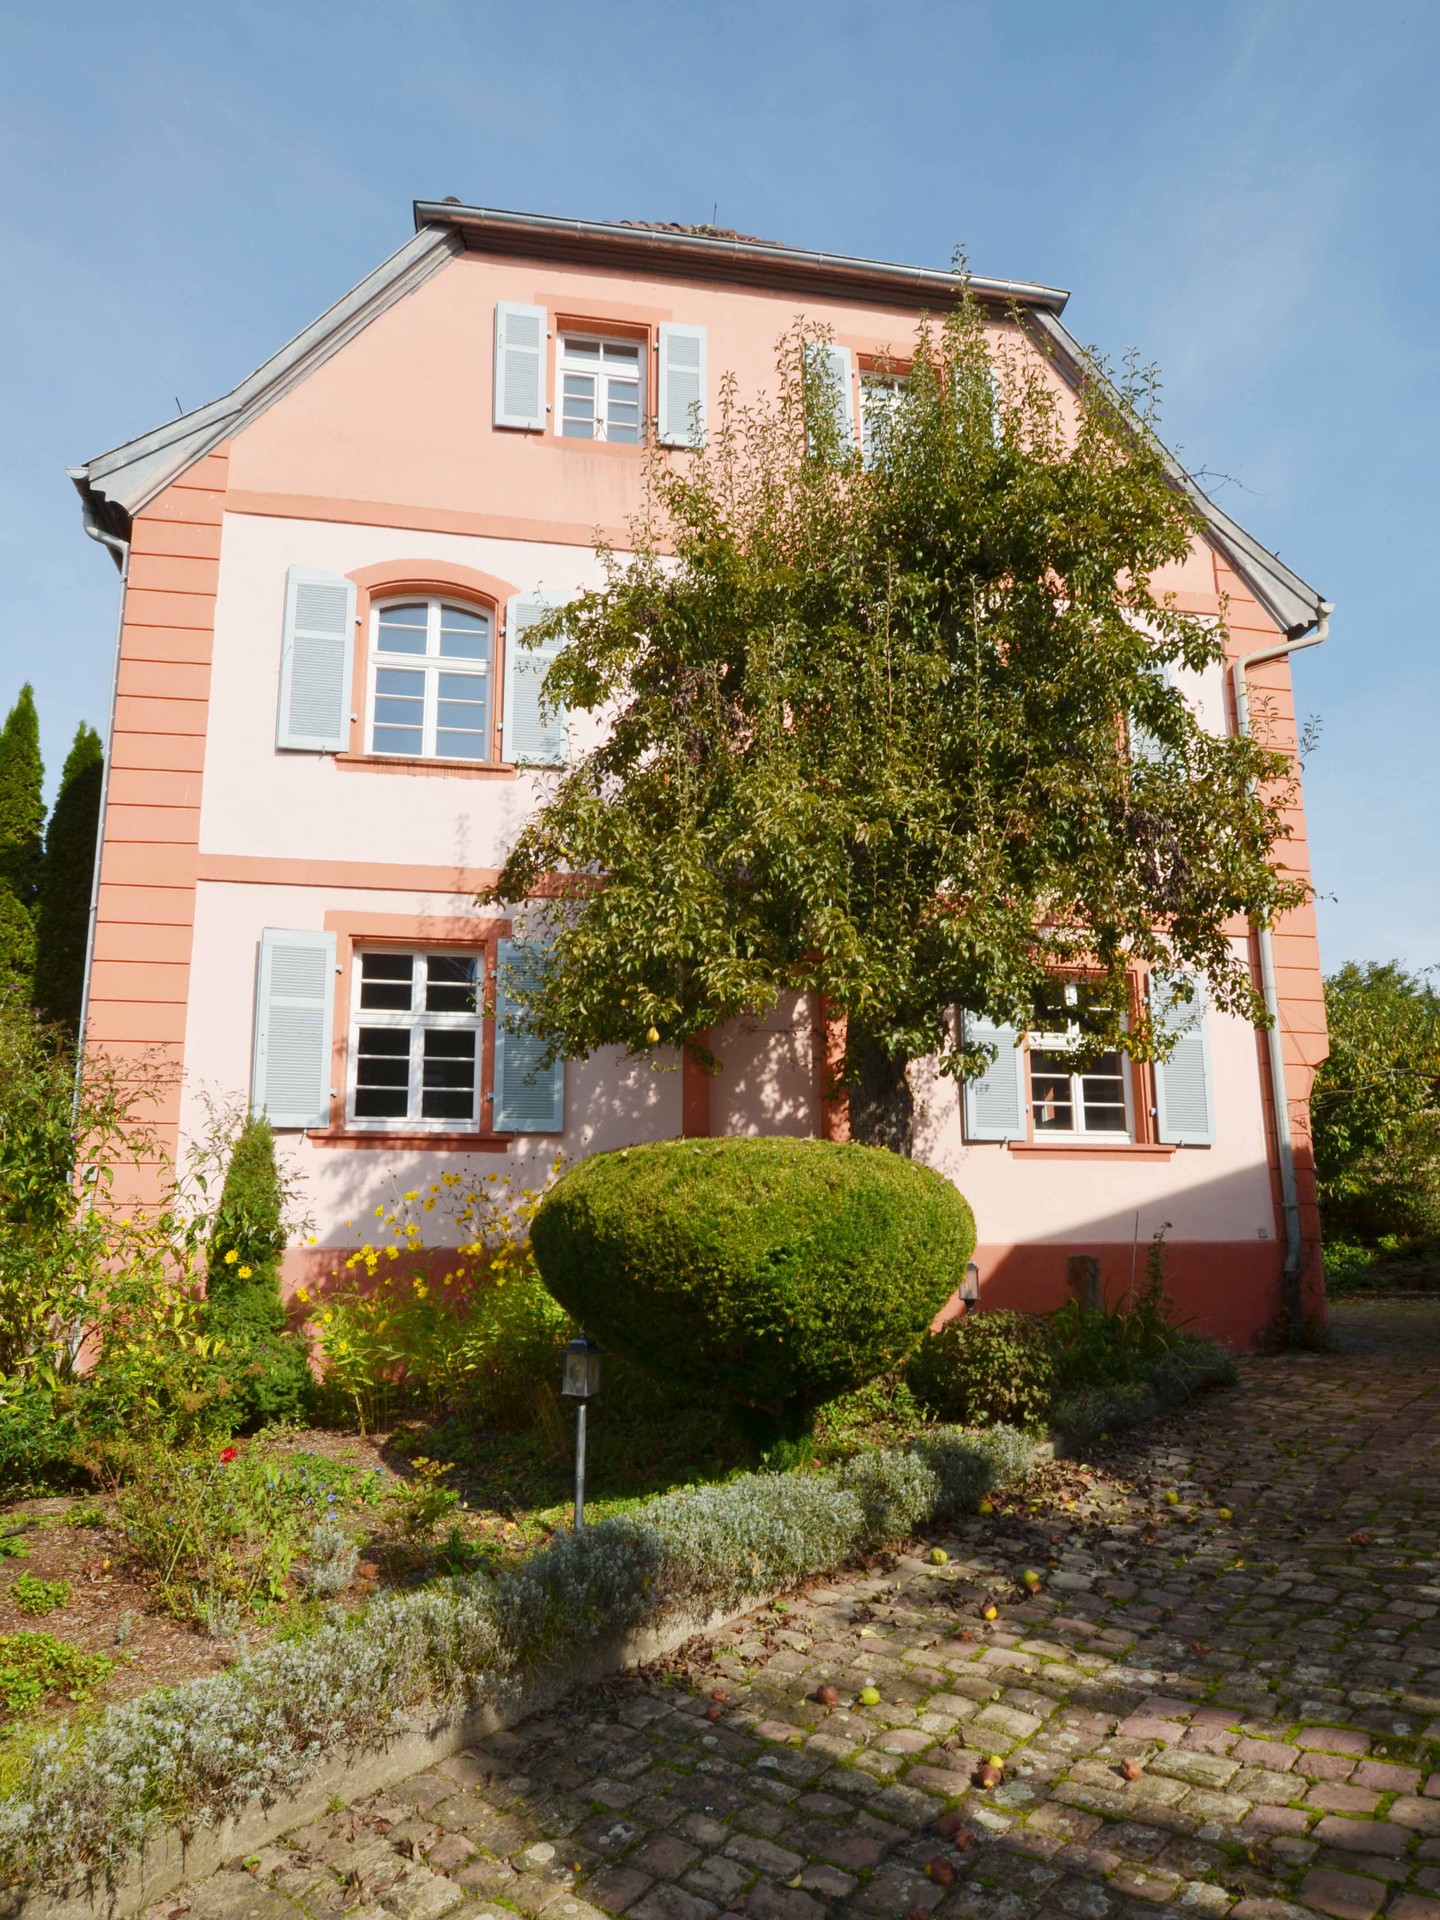 Haus in Keltern - Hofeinfahrt mit Natursteinpflaster und Birnbaum